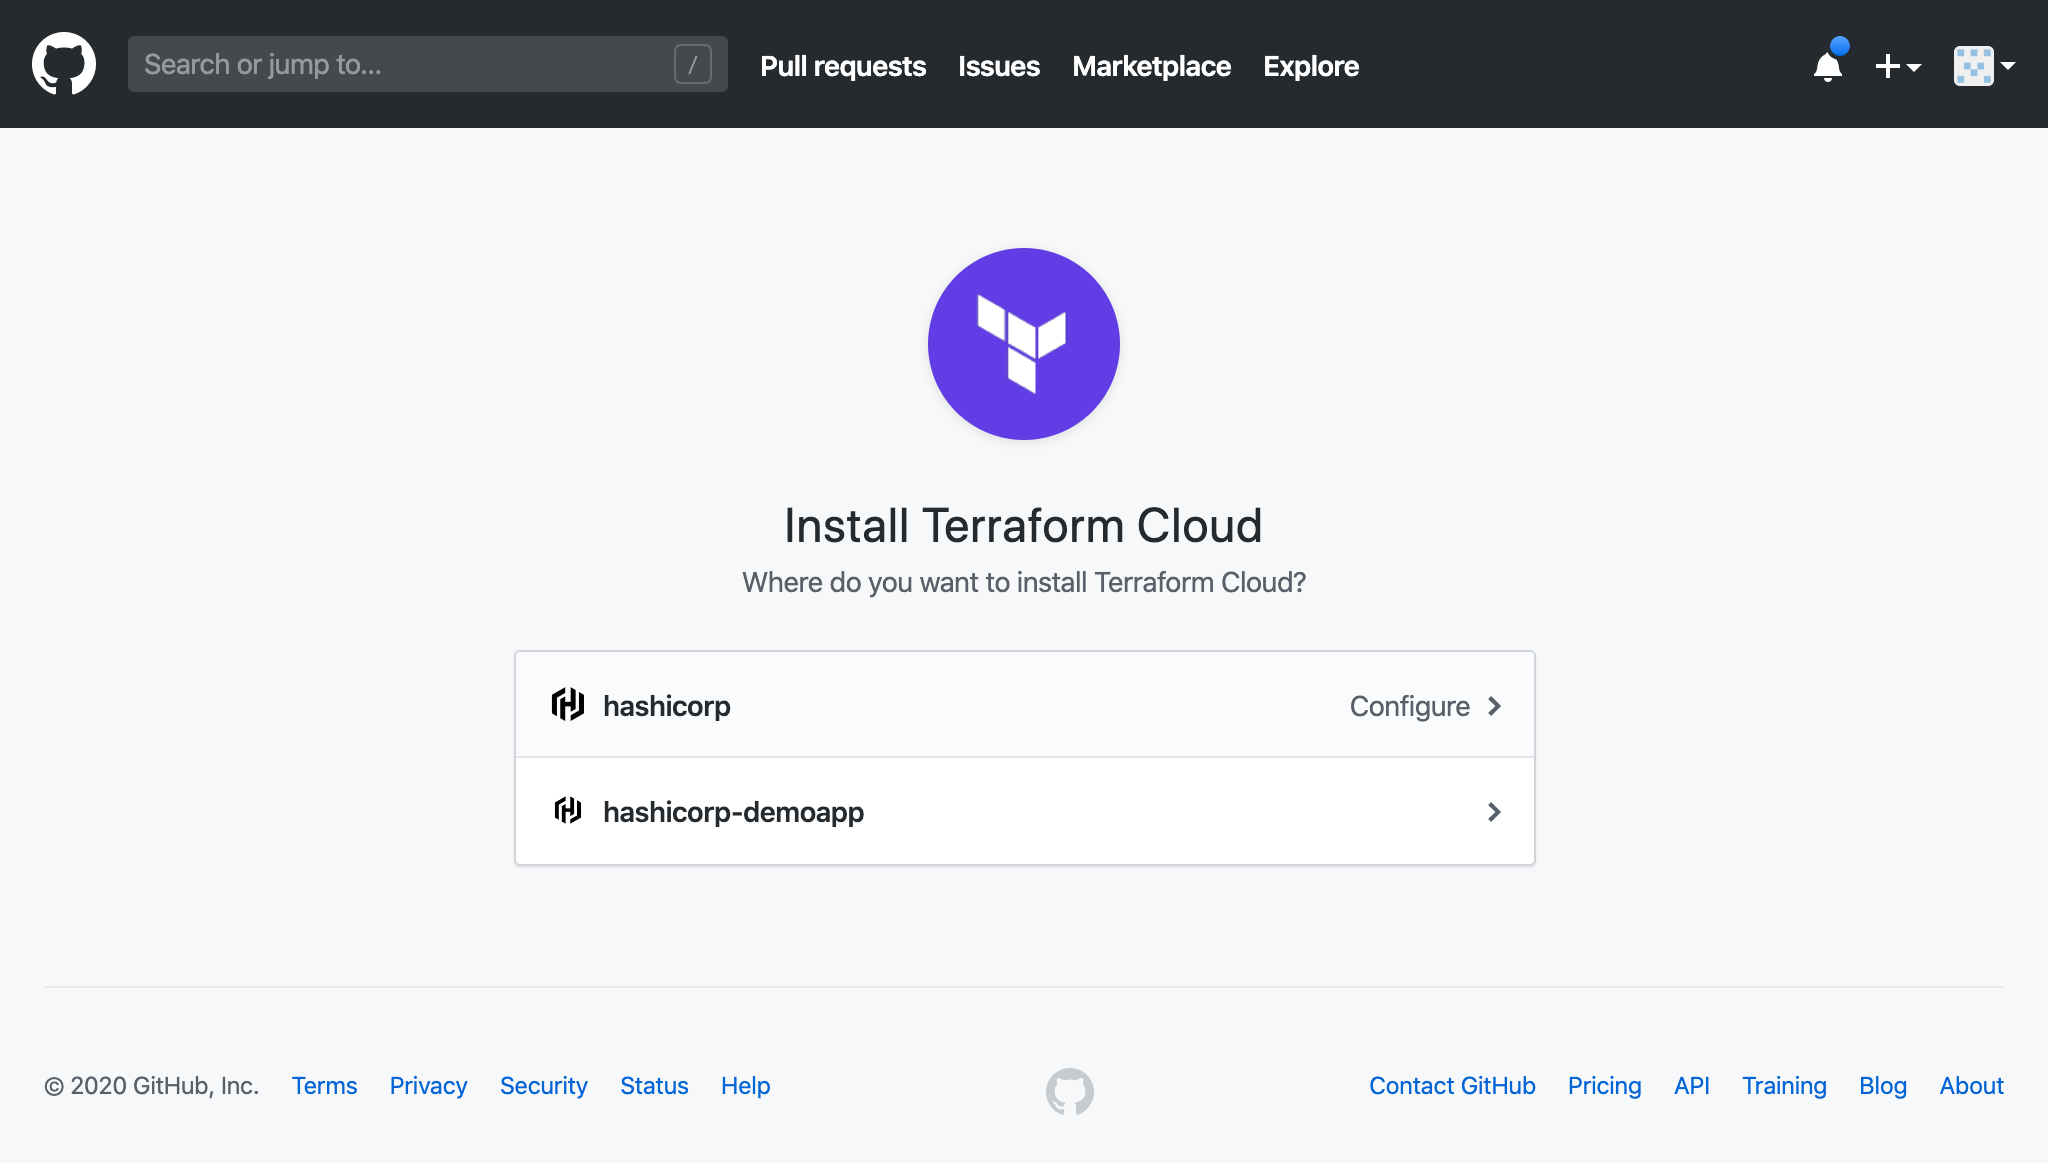 Install Terraform Cloud screen